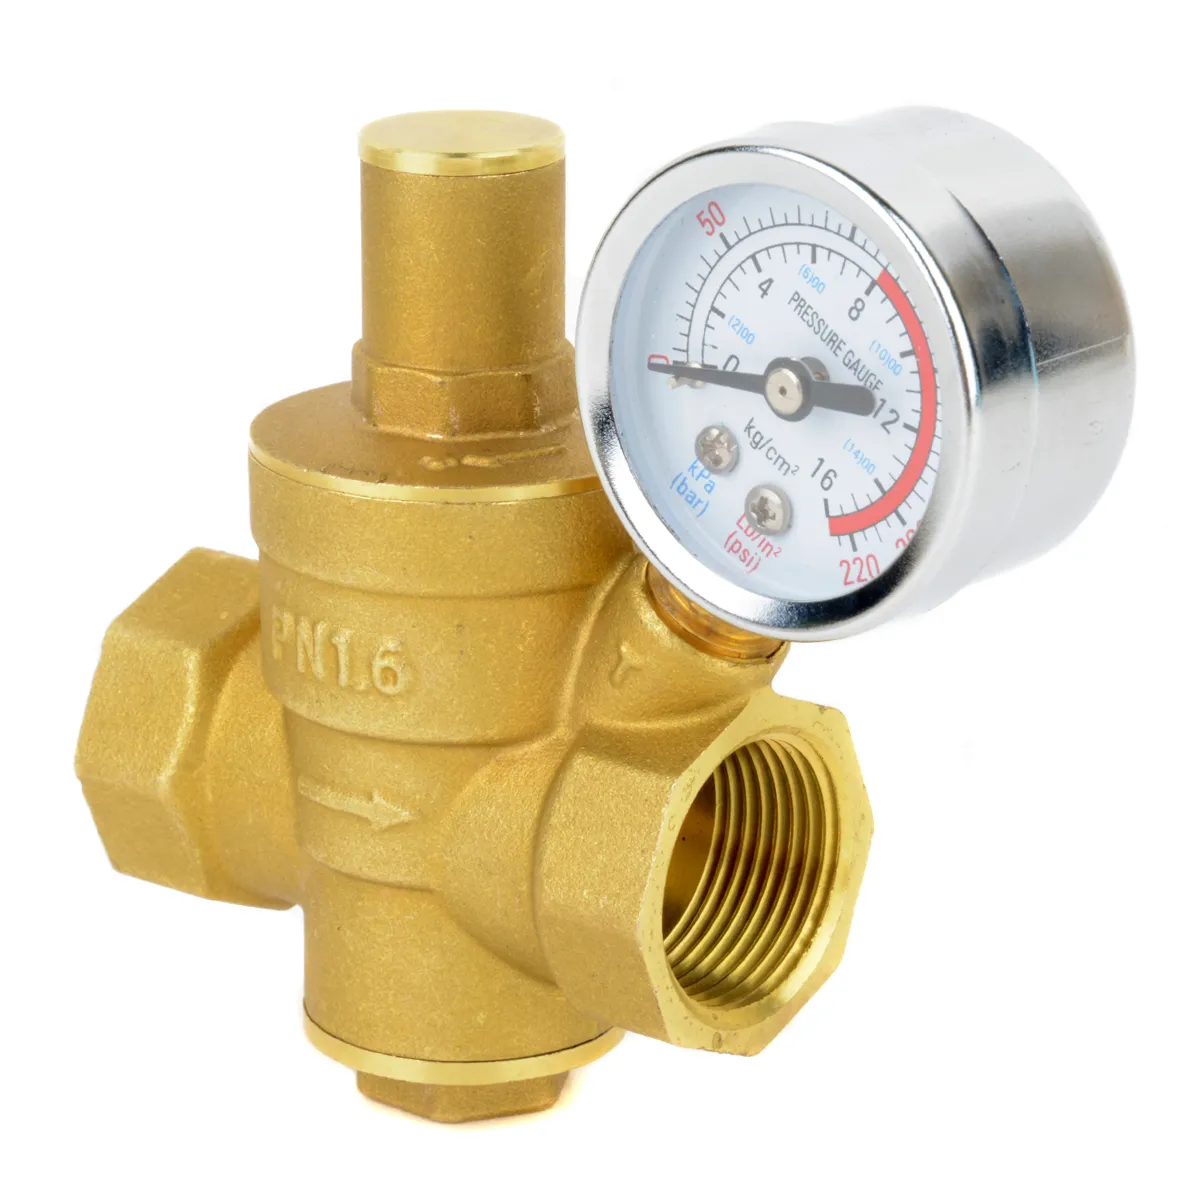 DN20 Válvula de reducción de presión de agua ajustable de latón con manómetro contador de presión DN20 reductor ajustable de presión de agua de latón 